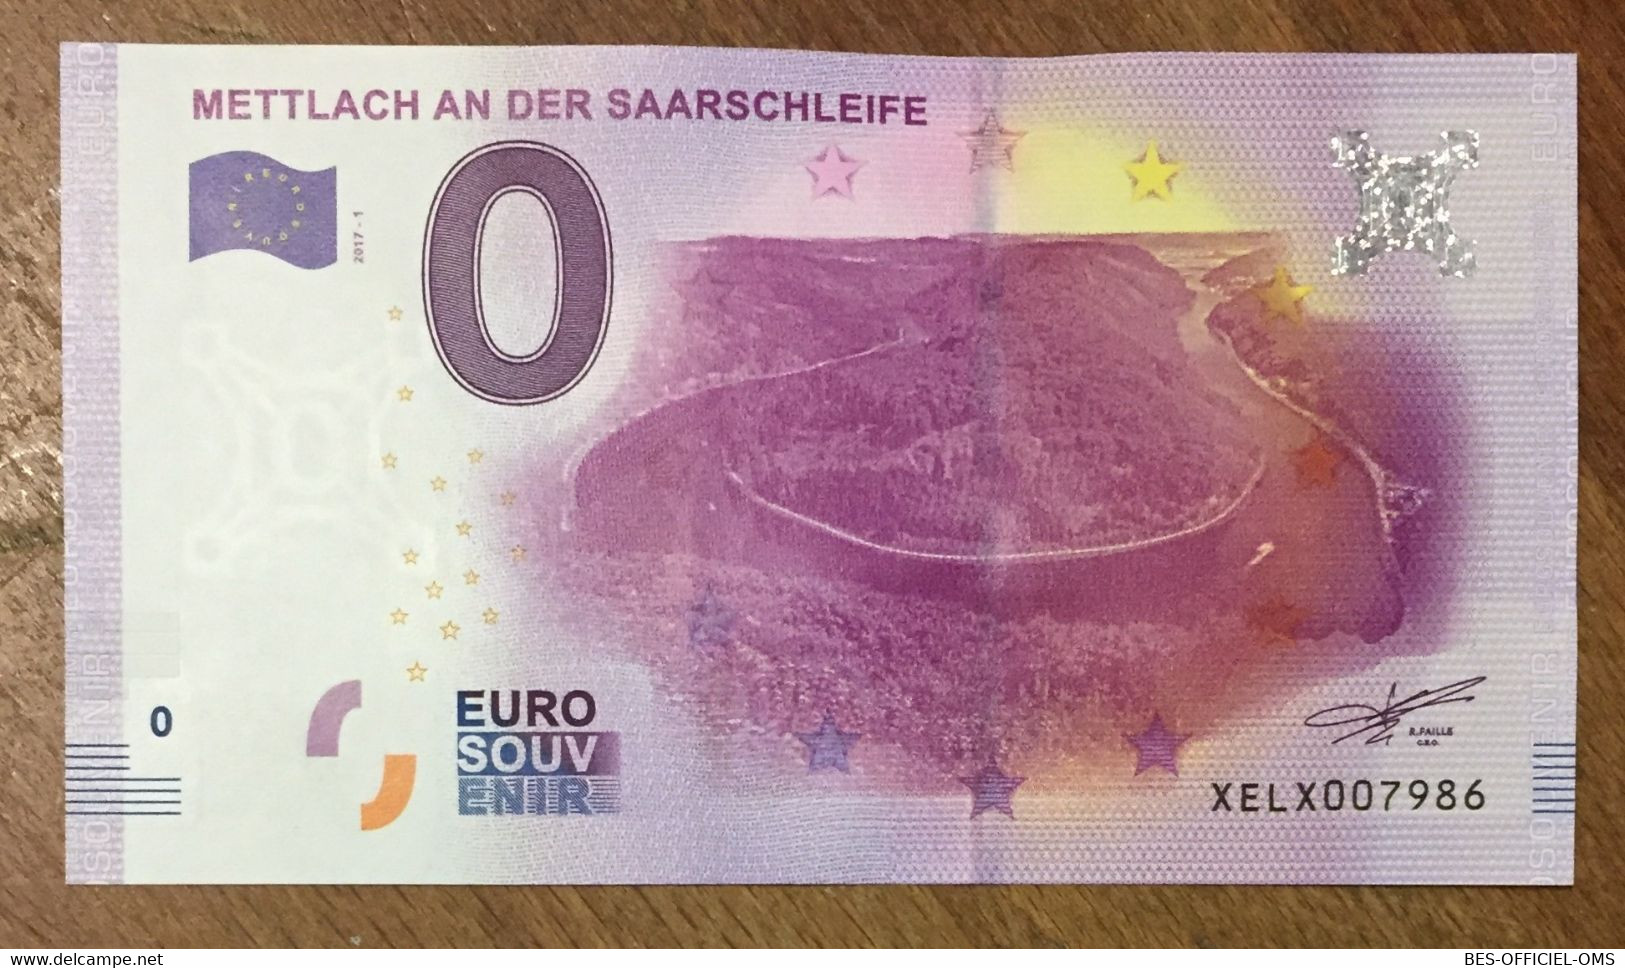 2017 BILLET 0 EURO SOUVENIR ALLEMAGNE DEUTSCHLAND METTLACH AN DER SAARSCHLEIFE ZERO 0 EURO SCHEIN BANKNOTE PAPER MONEY - Specimen